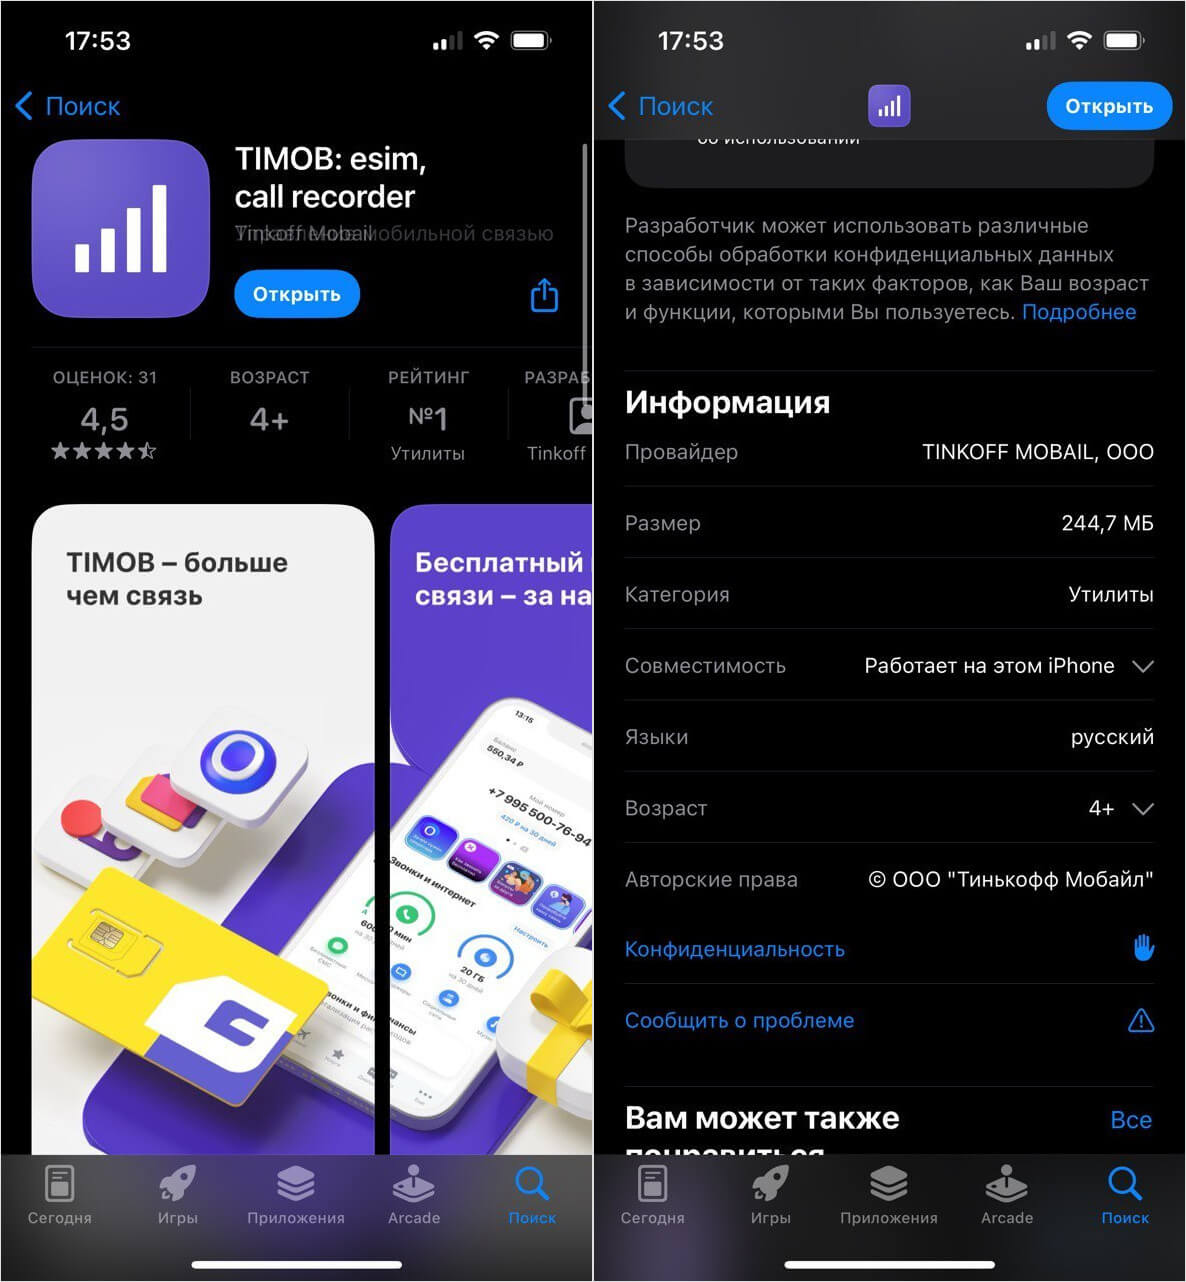 TIMOB — новое приложение Тинькофф Мобайл для iPhone. Как войти в личный кабинет и оформить eSIM